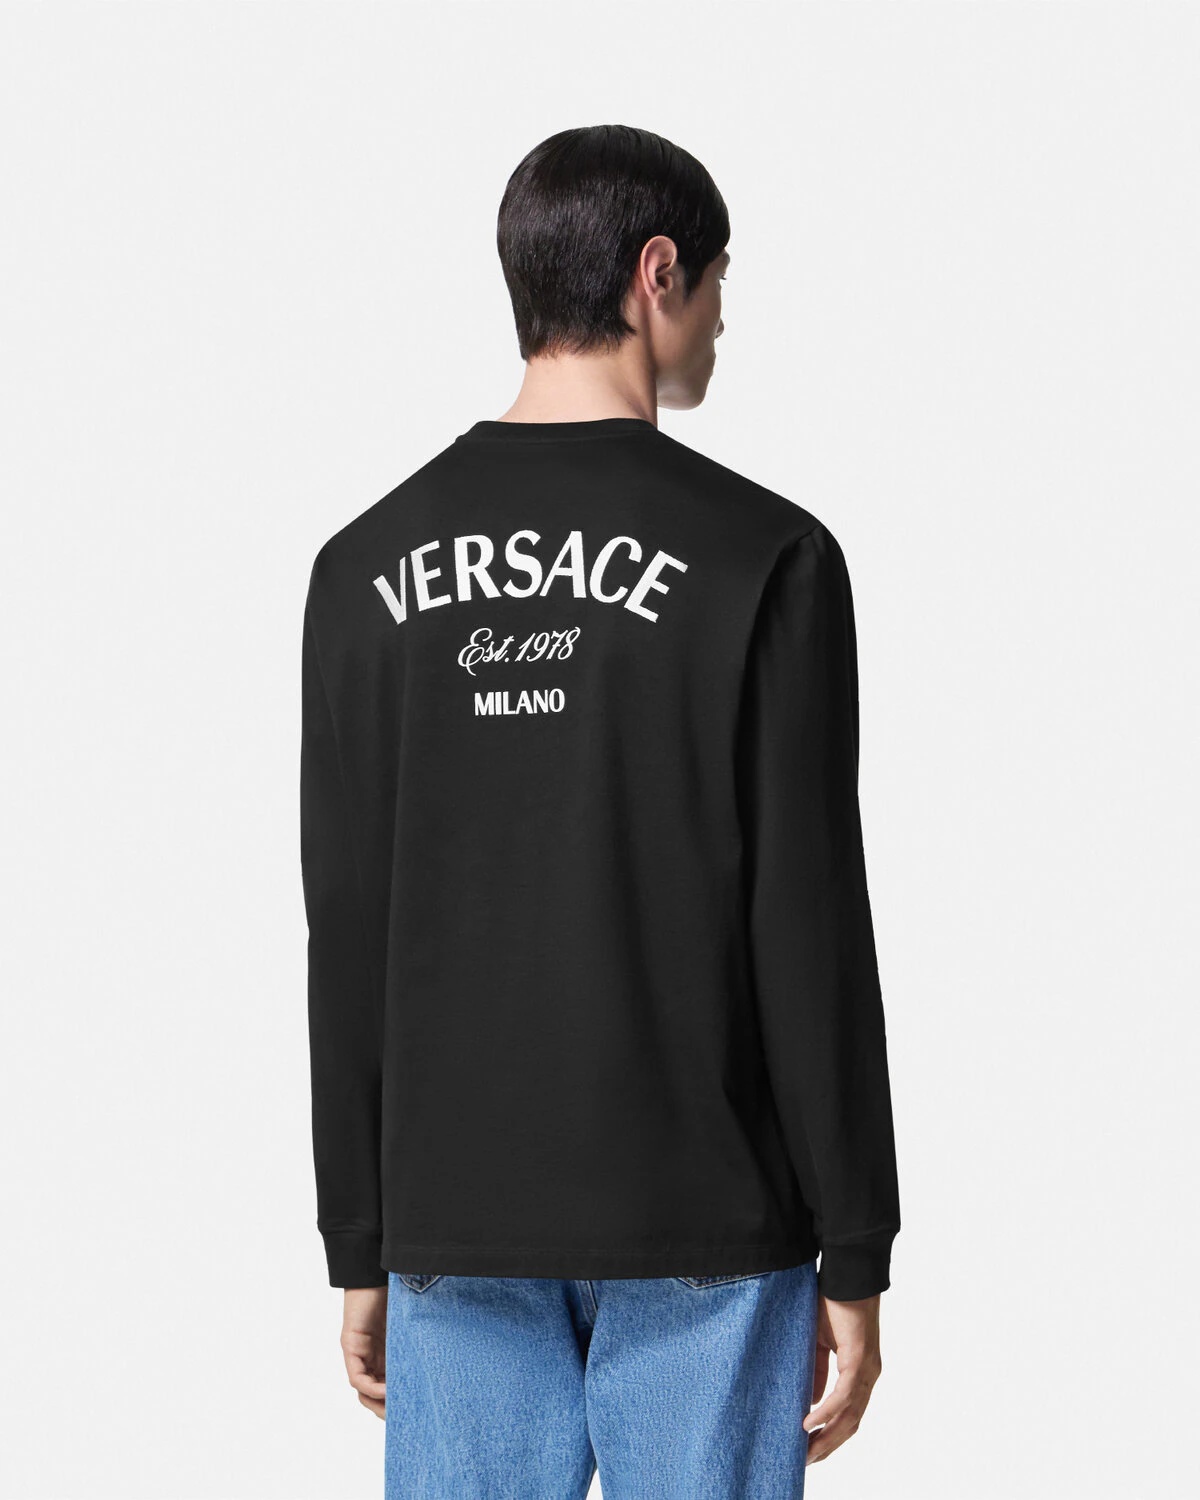 Versace Milano Stamp T-Shirt - 5